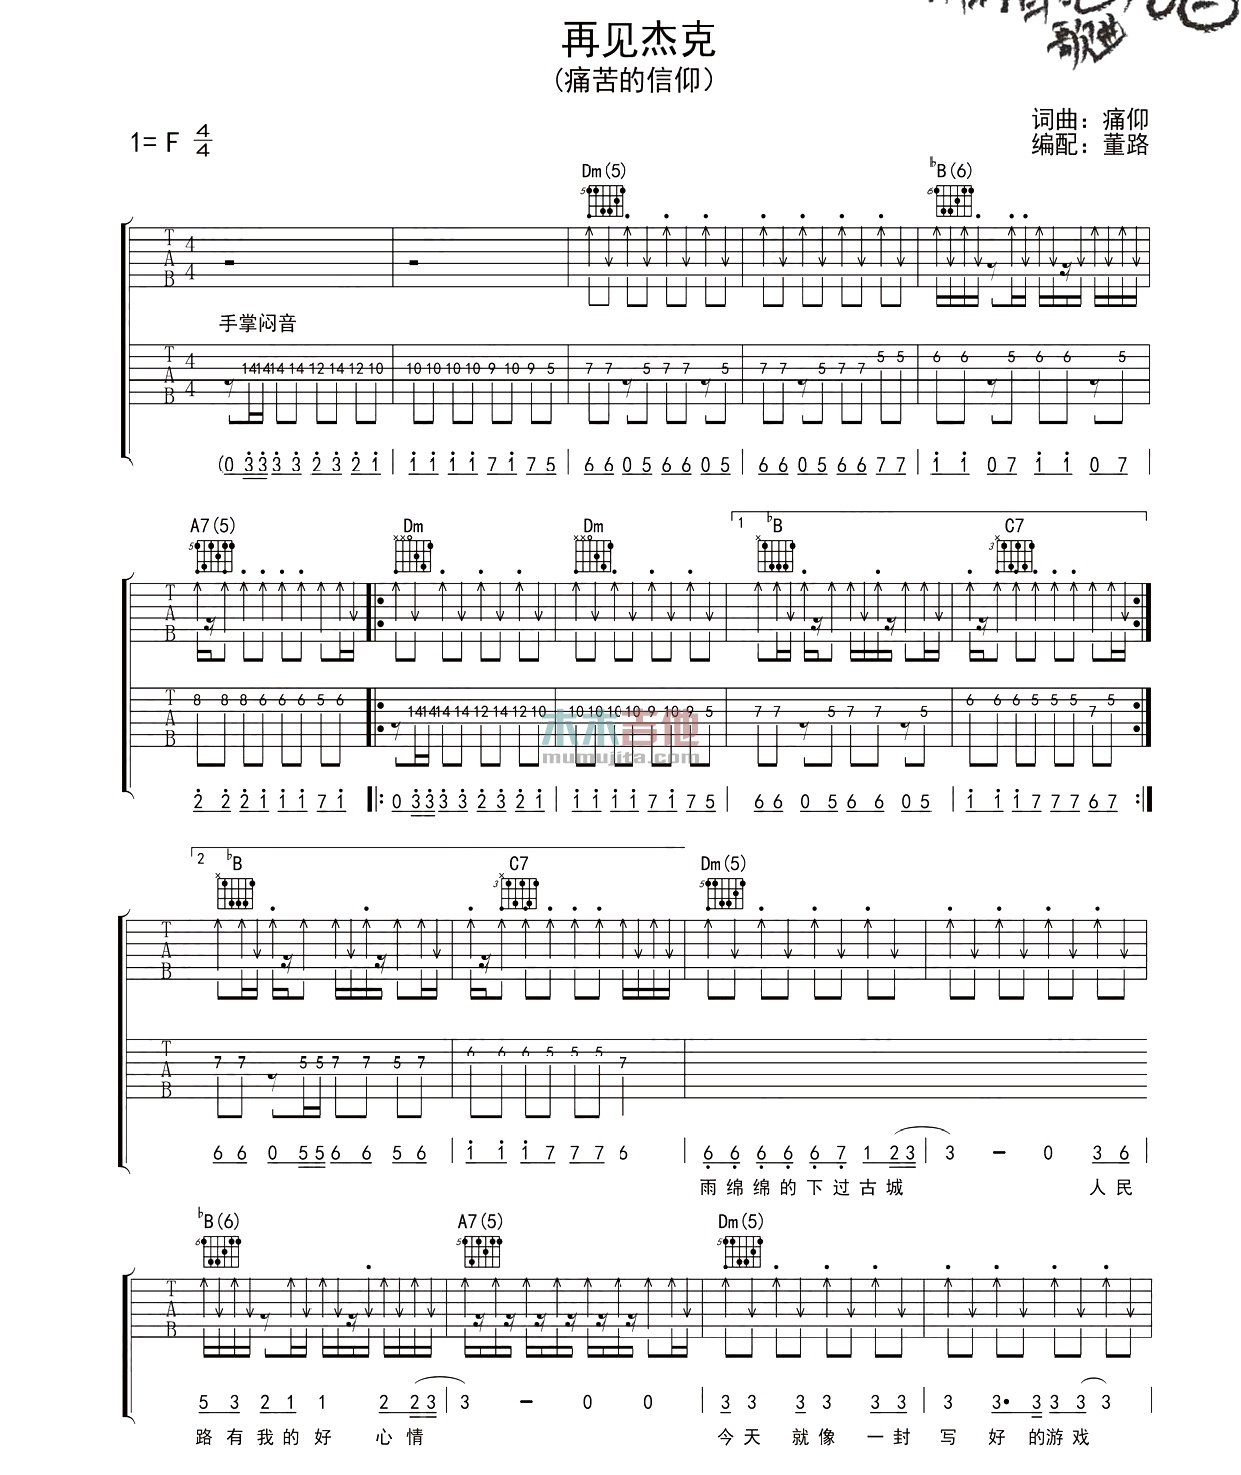 痛仰乐队《再见杰克》吉他谱(F调)-Guitar Music Score